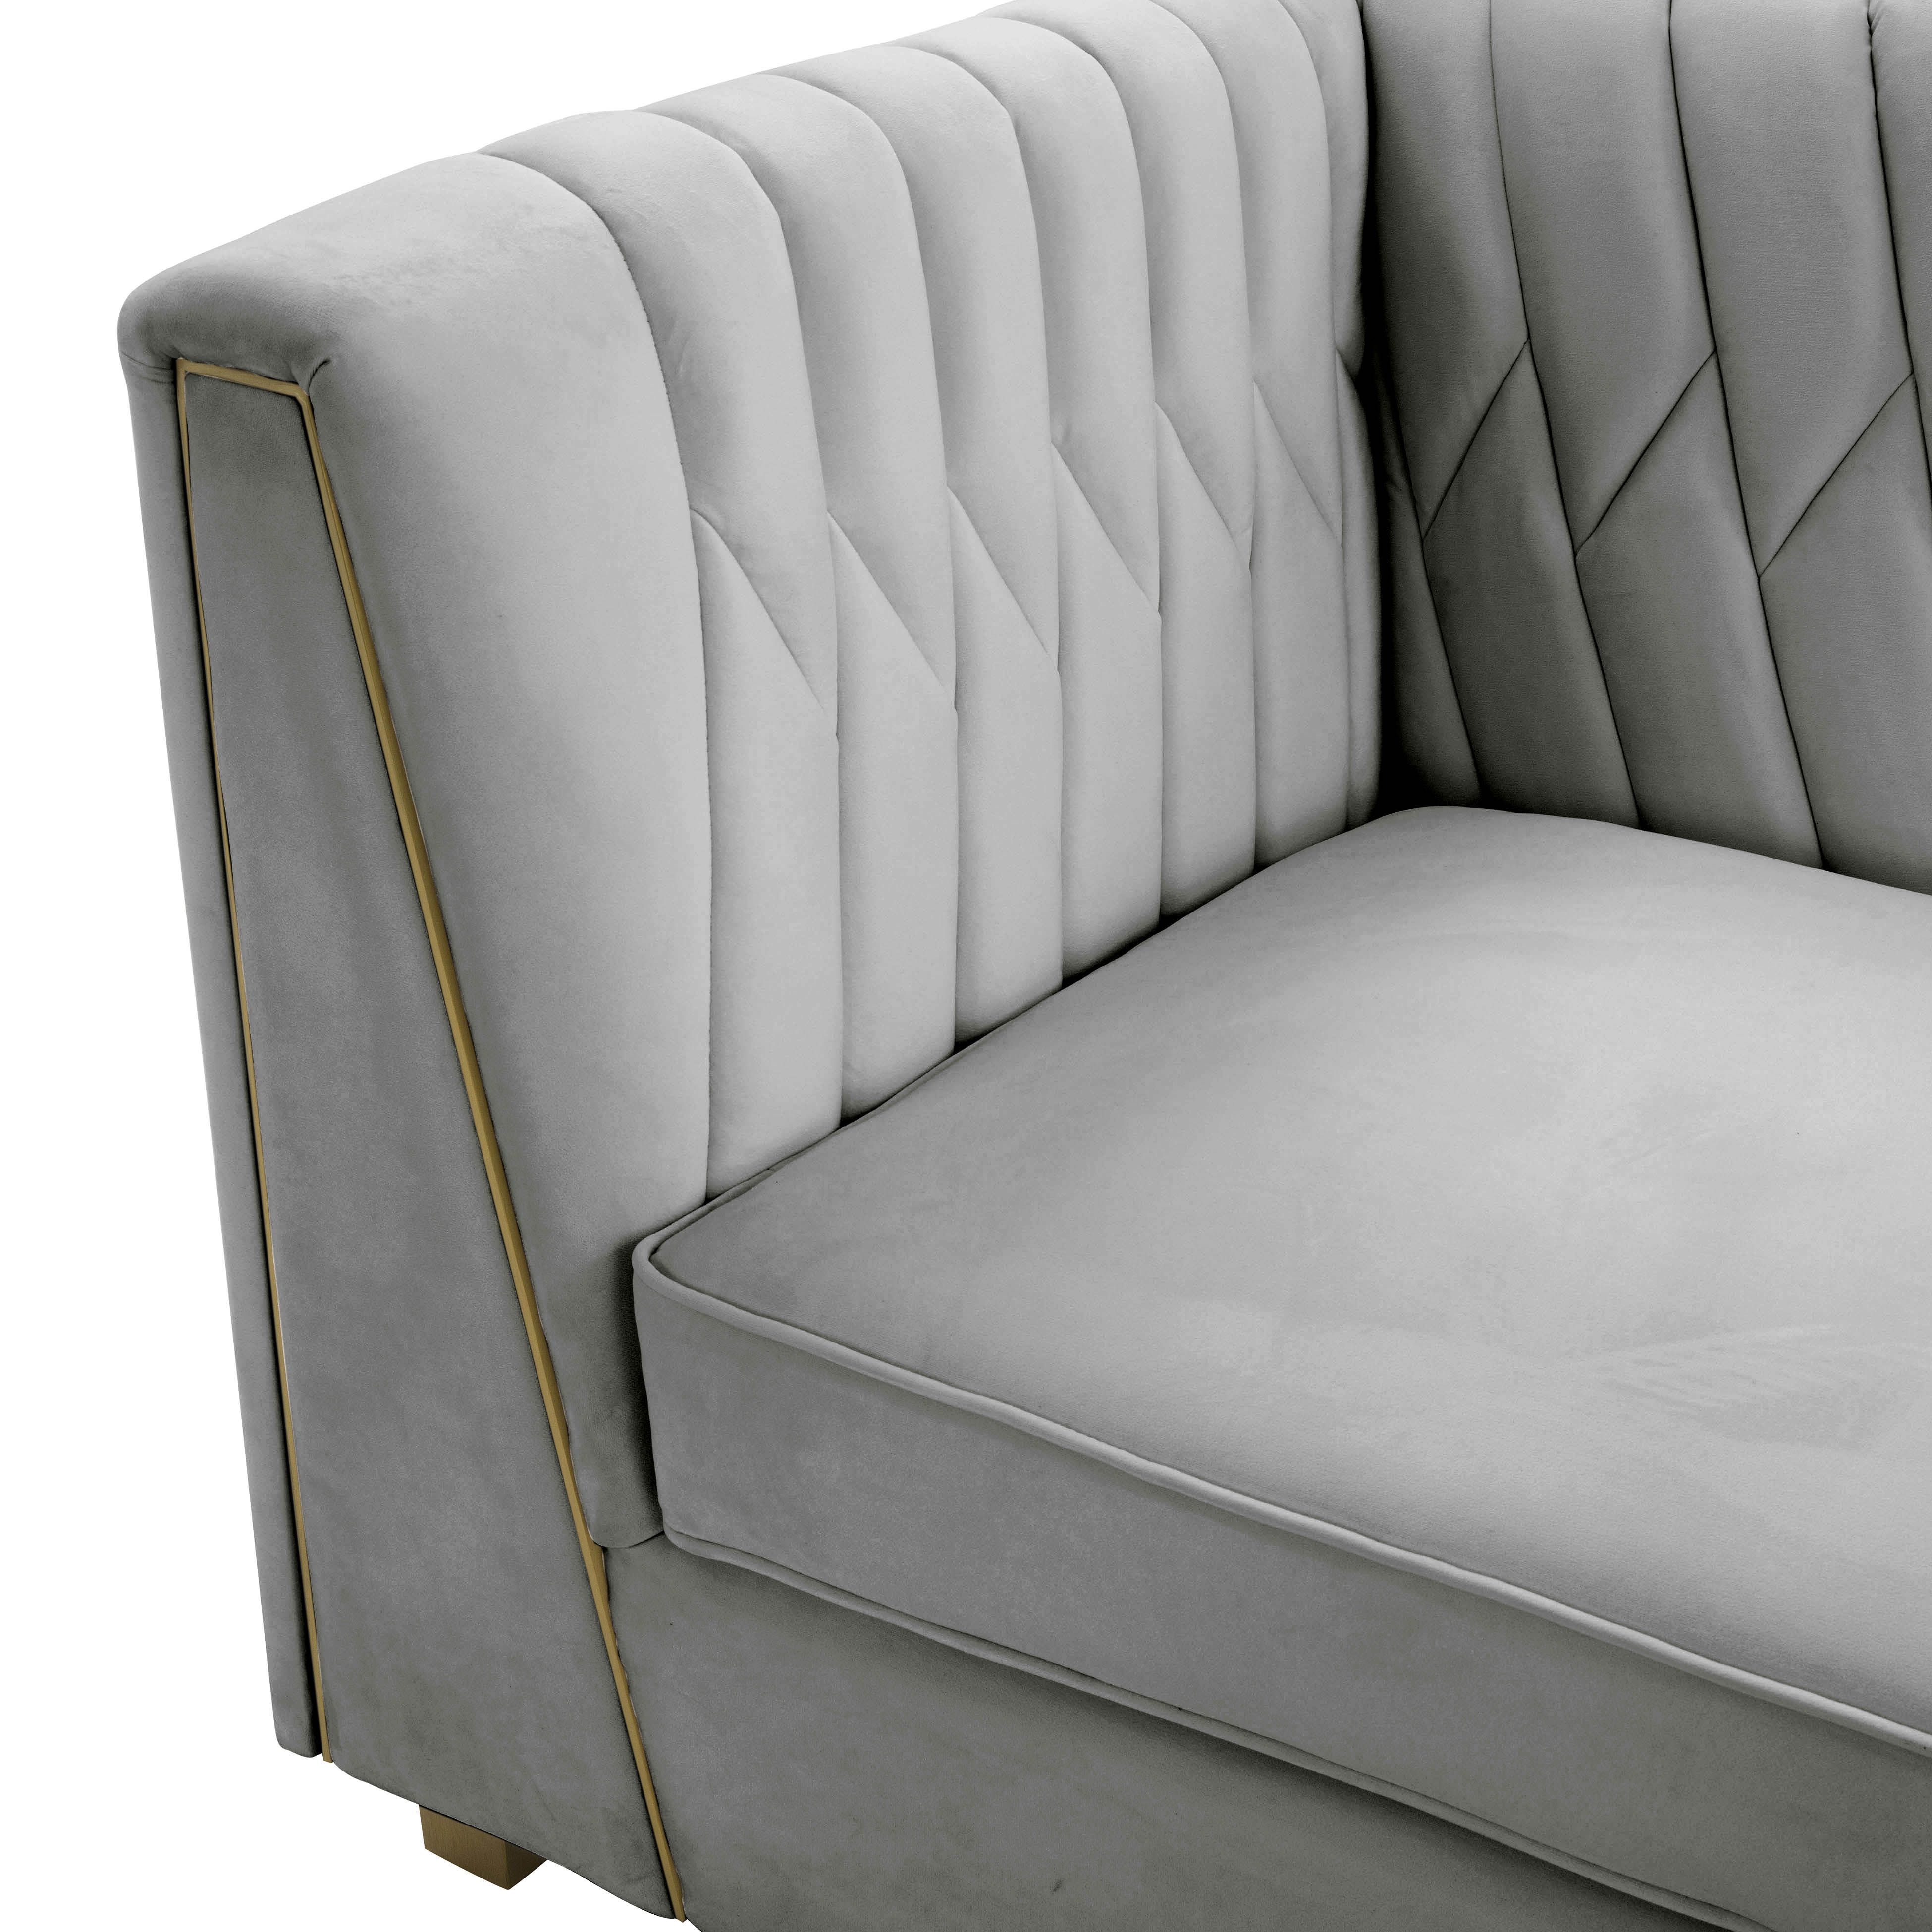 Wafa Light Grey Velvet Sofainspire Me! Home Decor – Tov Furniture In Light Gray Velvet Sofas (View 2 of 20)